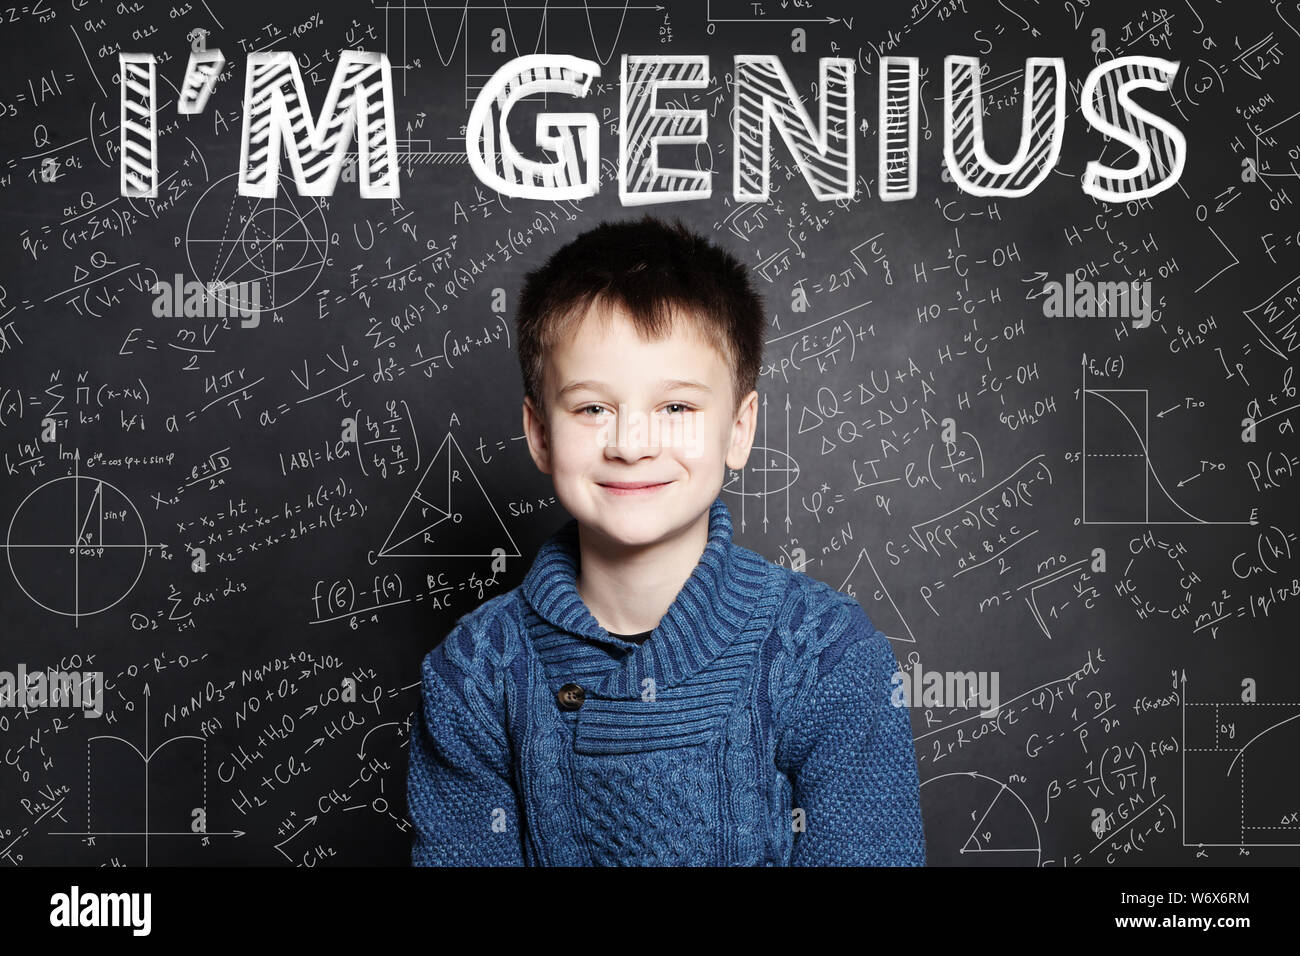 Glückliches Kind student lächelnd auf blackboard Hintergrund mit Wissenschaft und Mathematik Formel Stockfoto